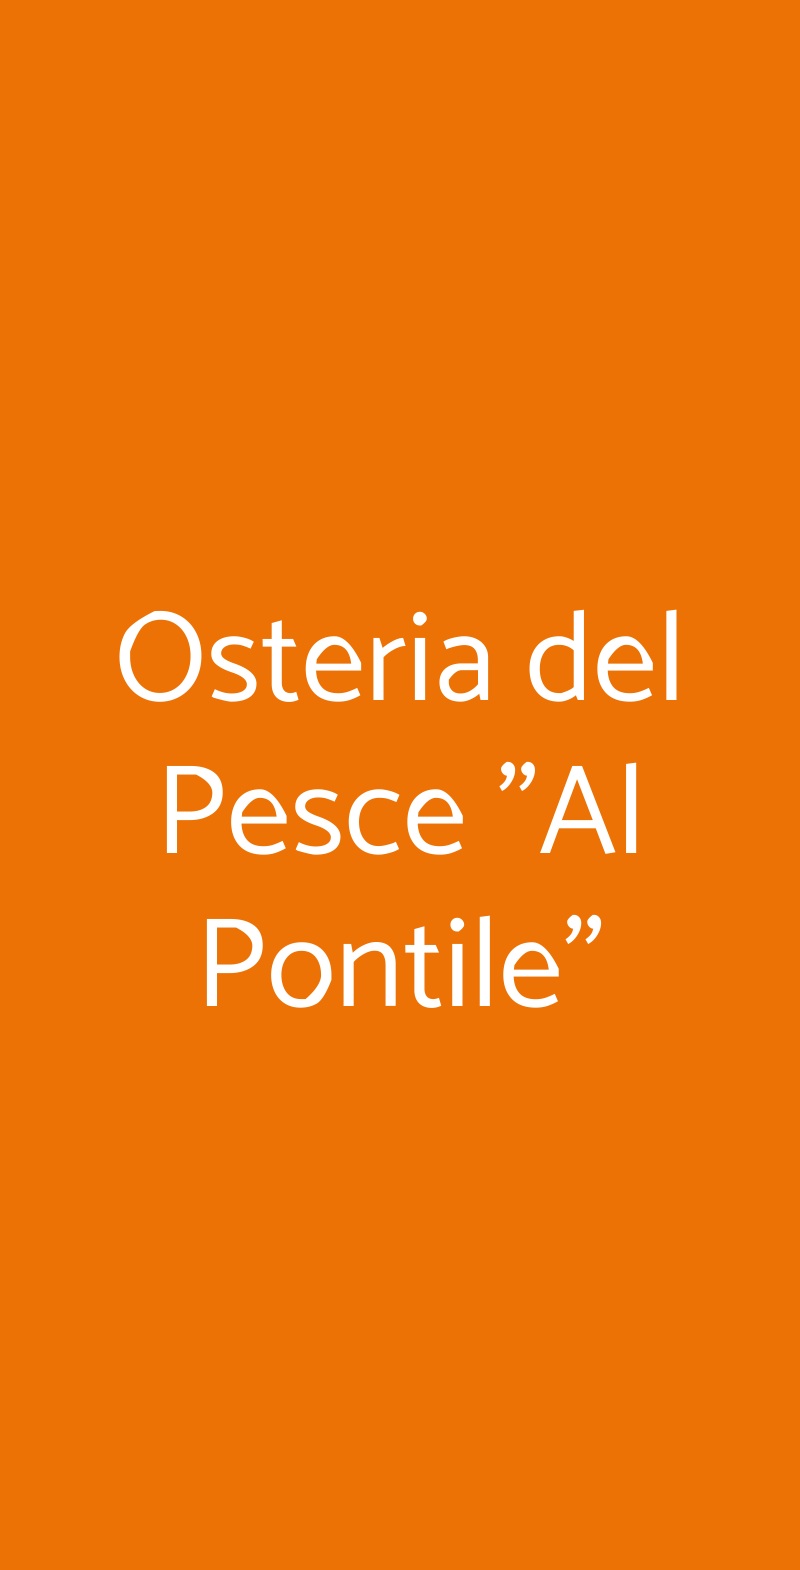 Osteria del Pesce "Al Pontile" Milano menù 1 pagina